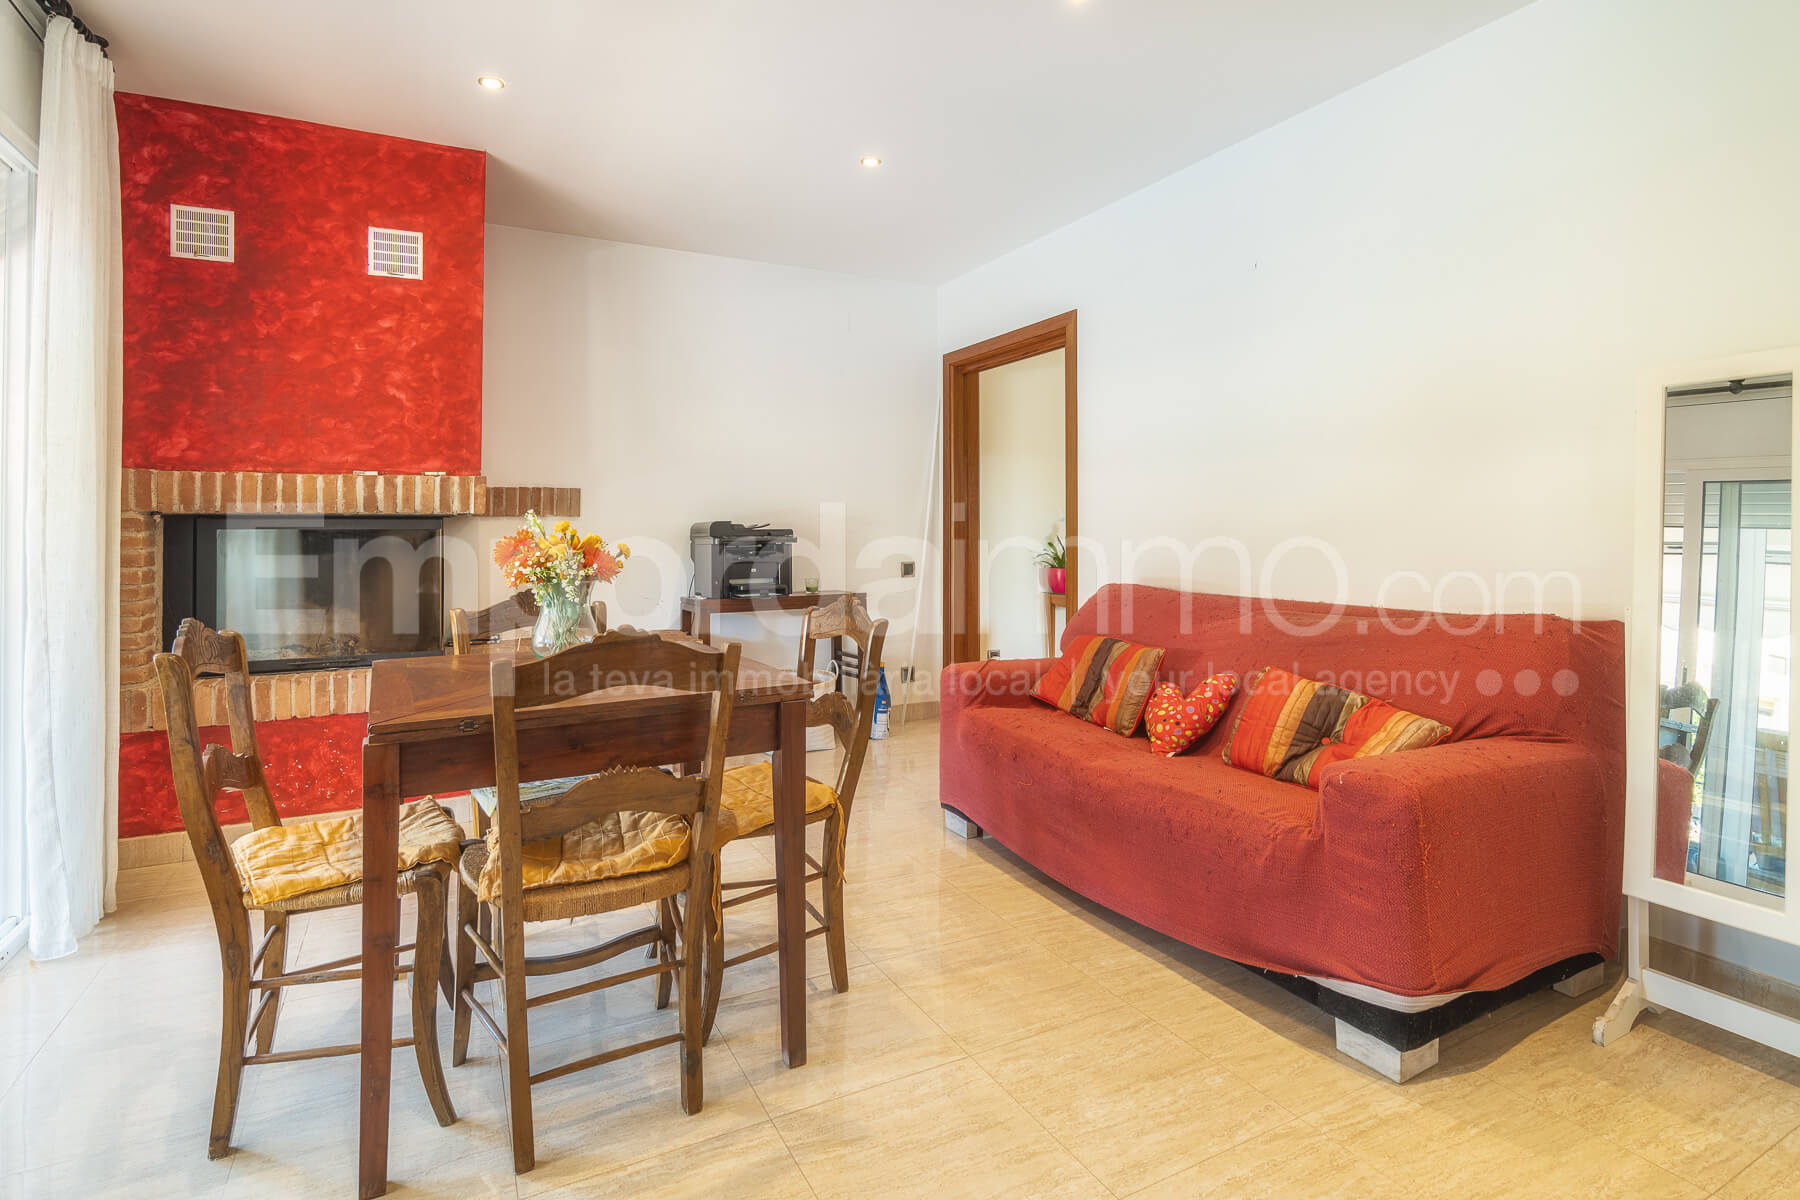 Casa con terreno en venta en El Catllar - Tarragona